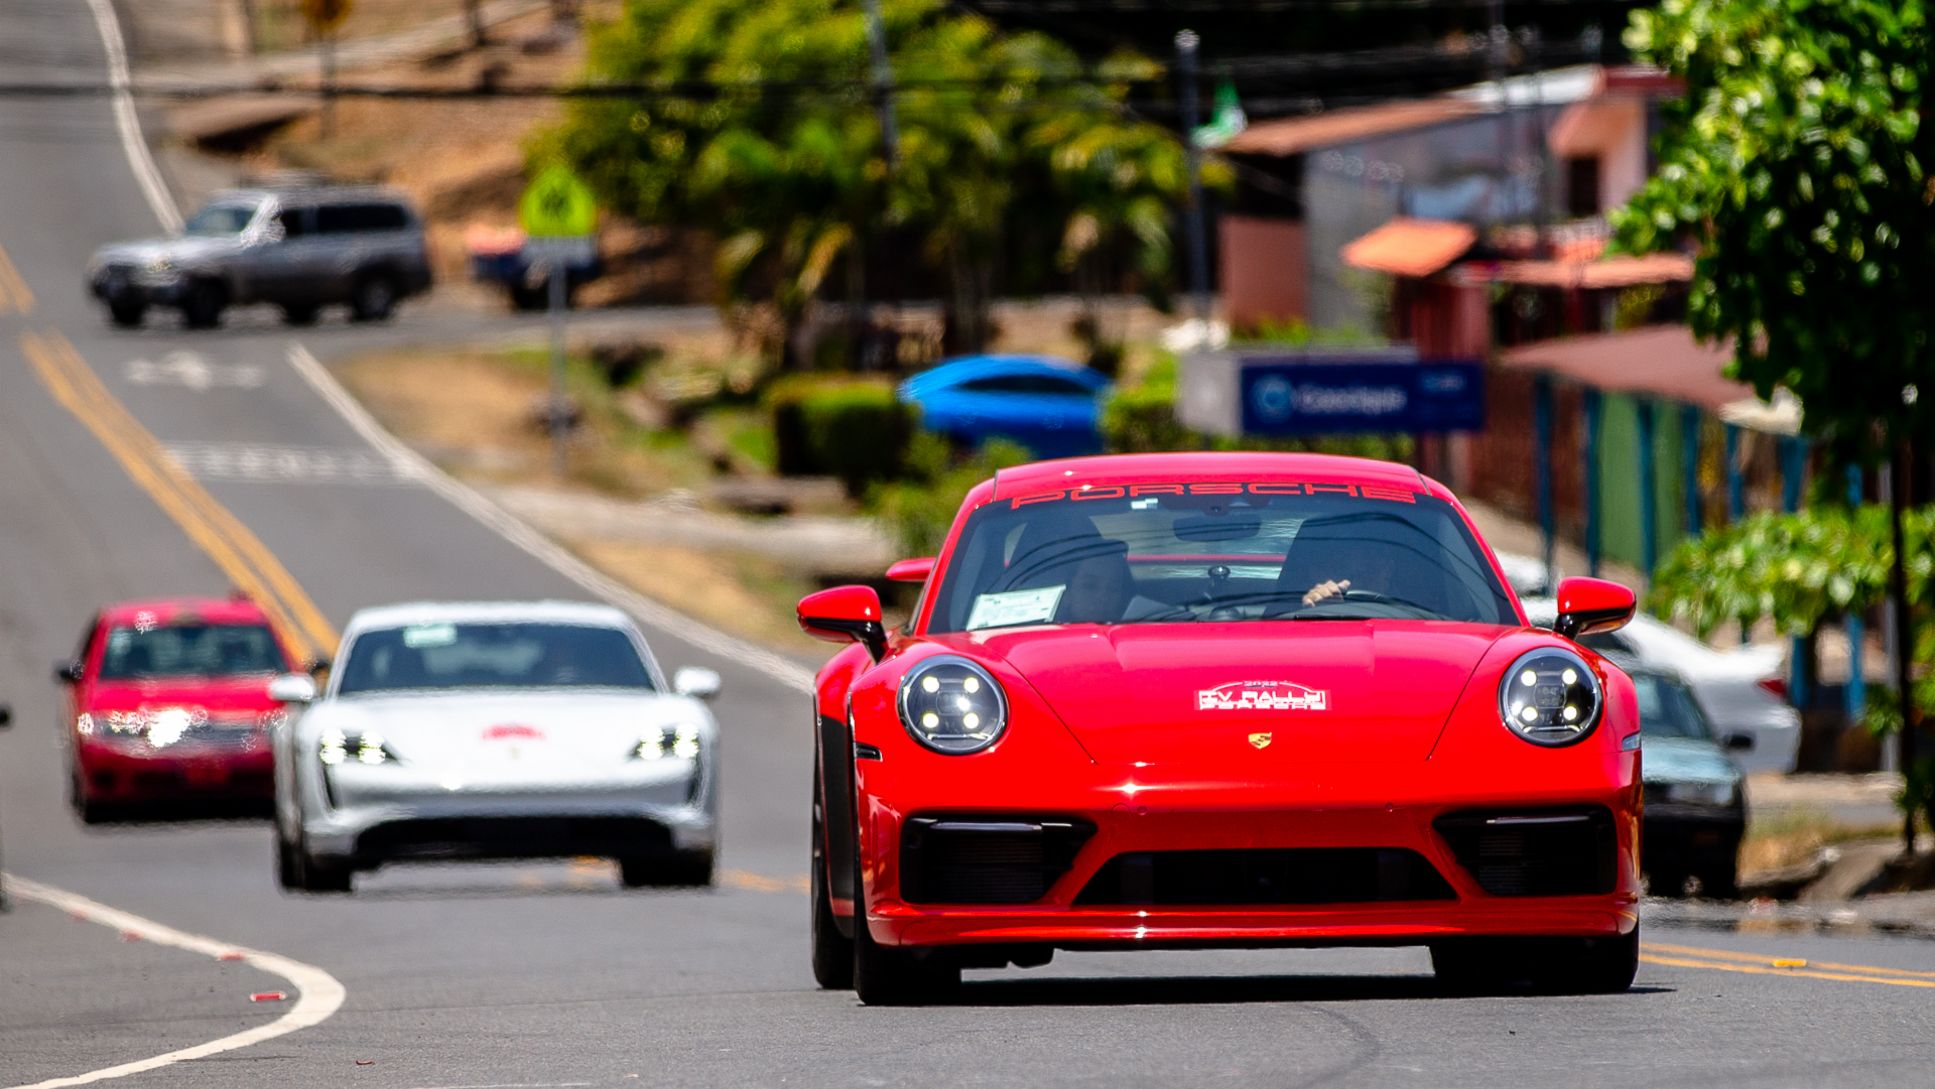 Regresa el Rally Porsche a Costa Rica con una Iniciativa de carácter social